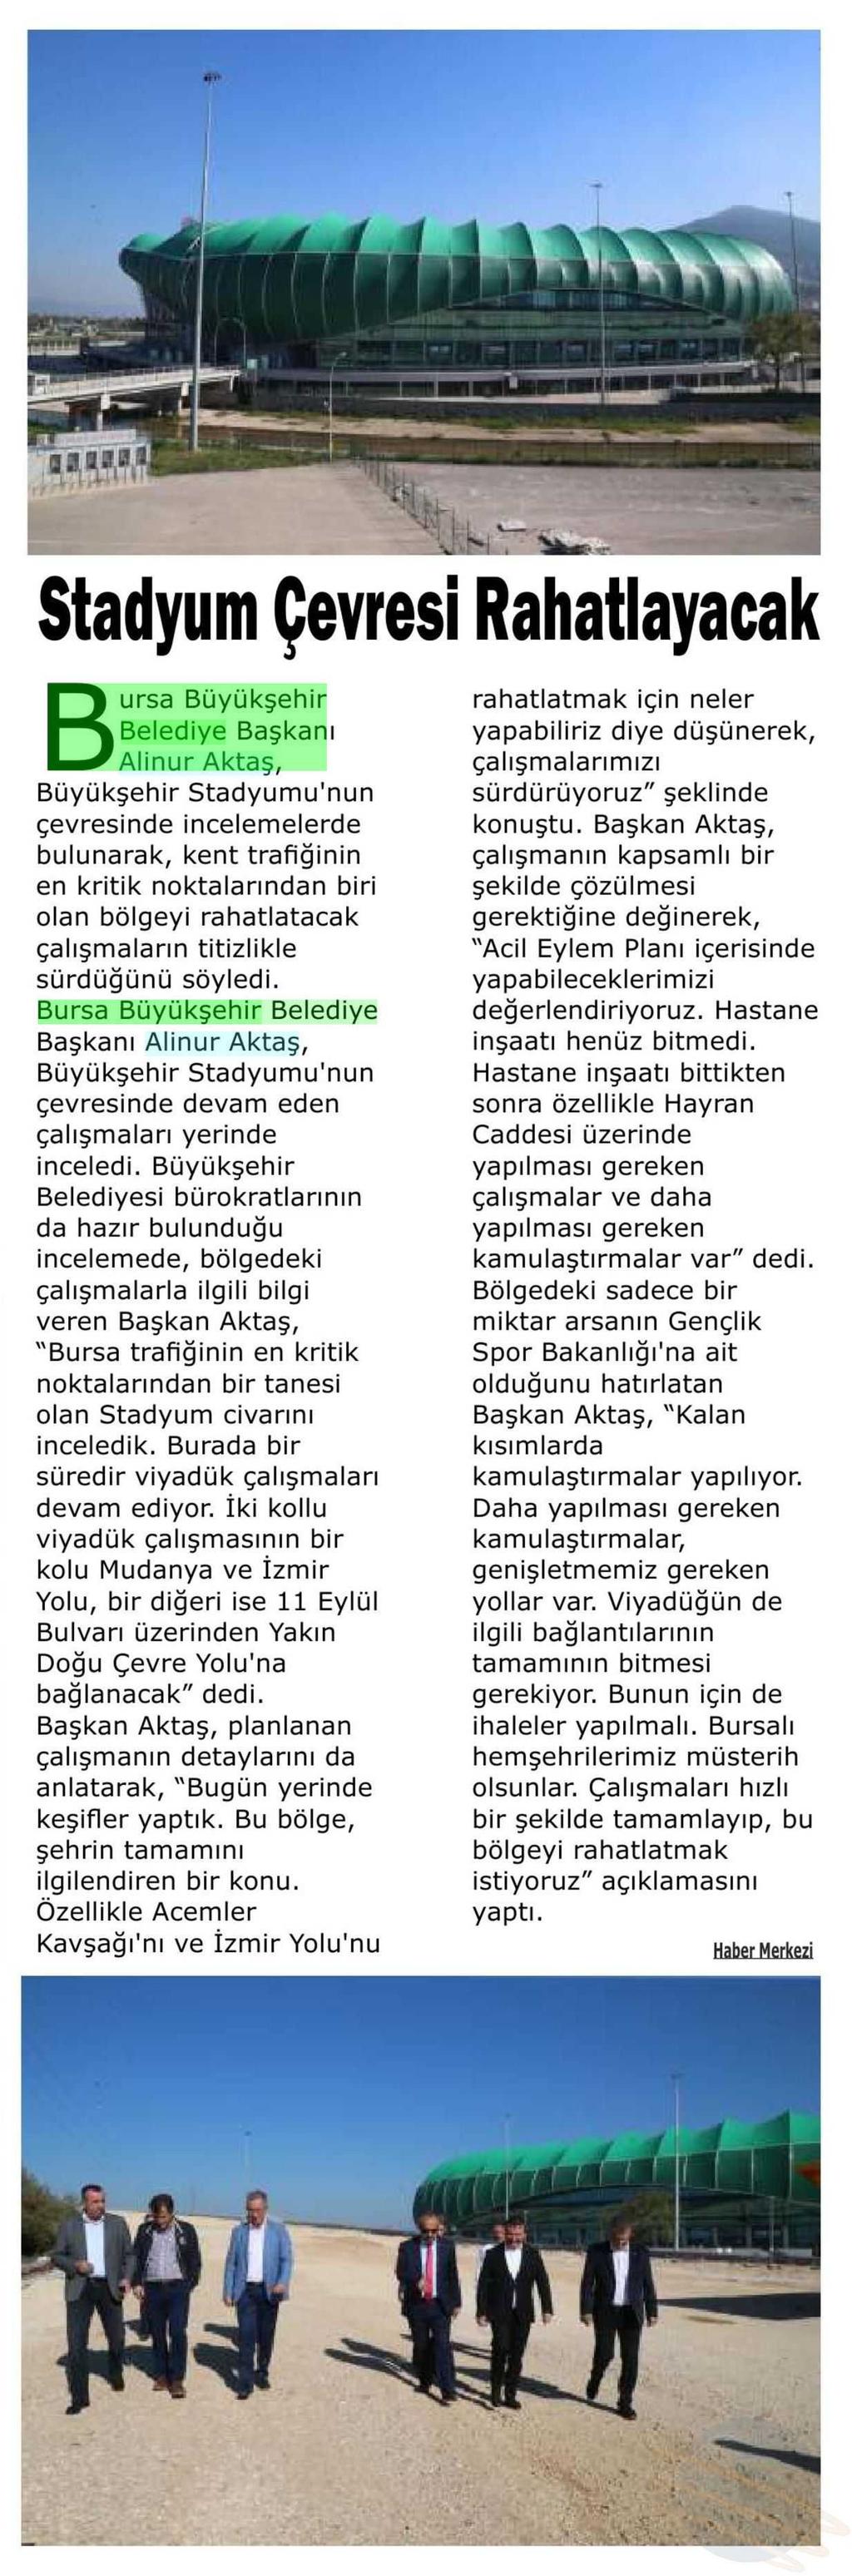 STADYUM ÇEVRESI RAHATLAYACAK Yayın Adı : Mücadele Gazetesi (Bursa)